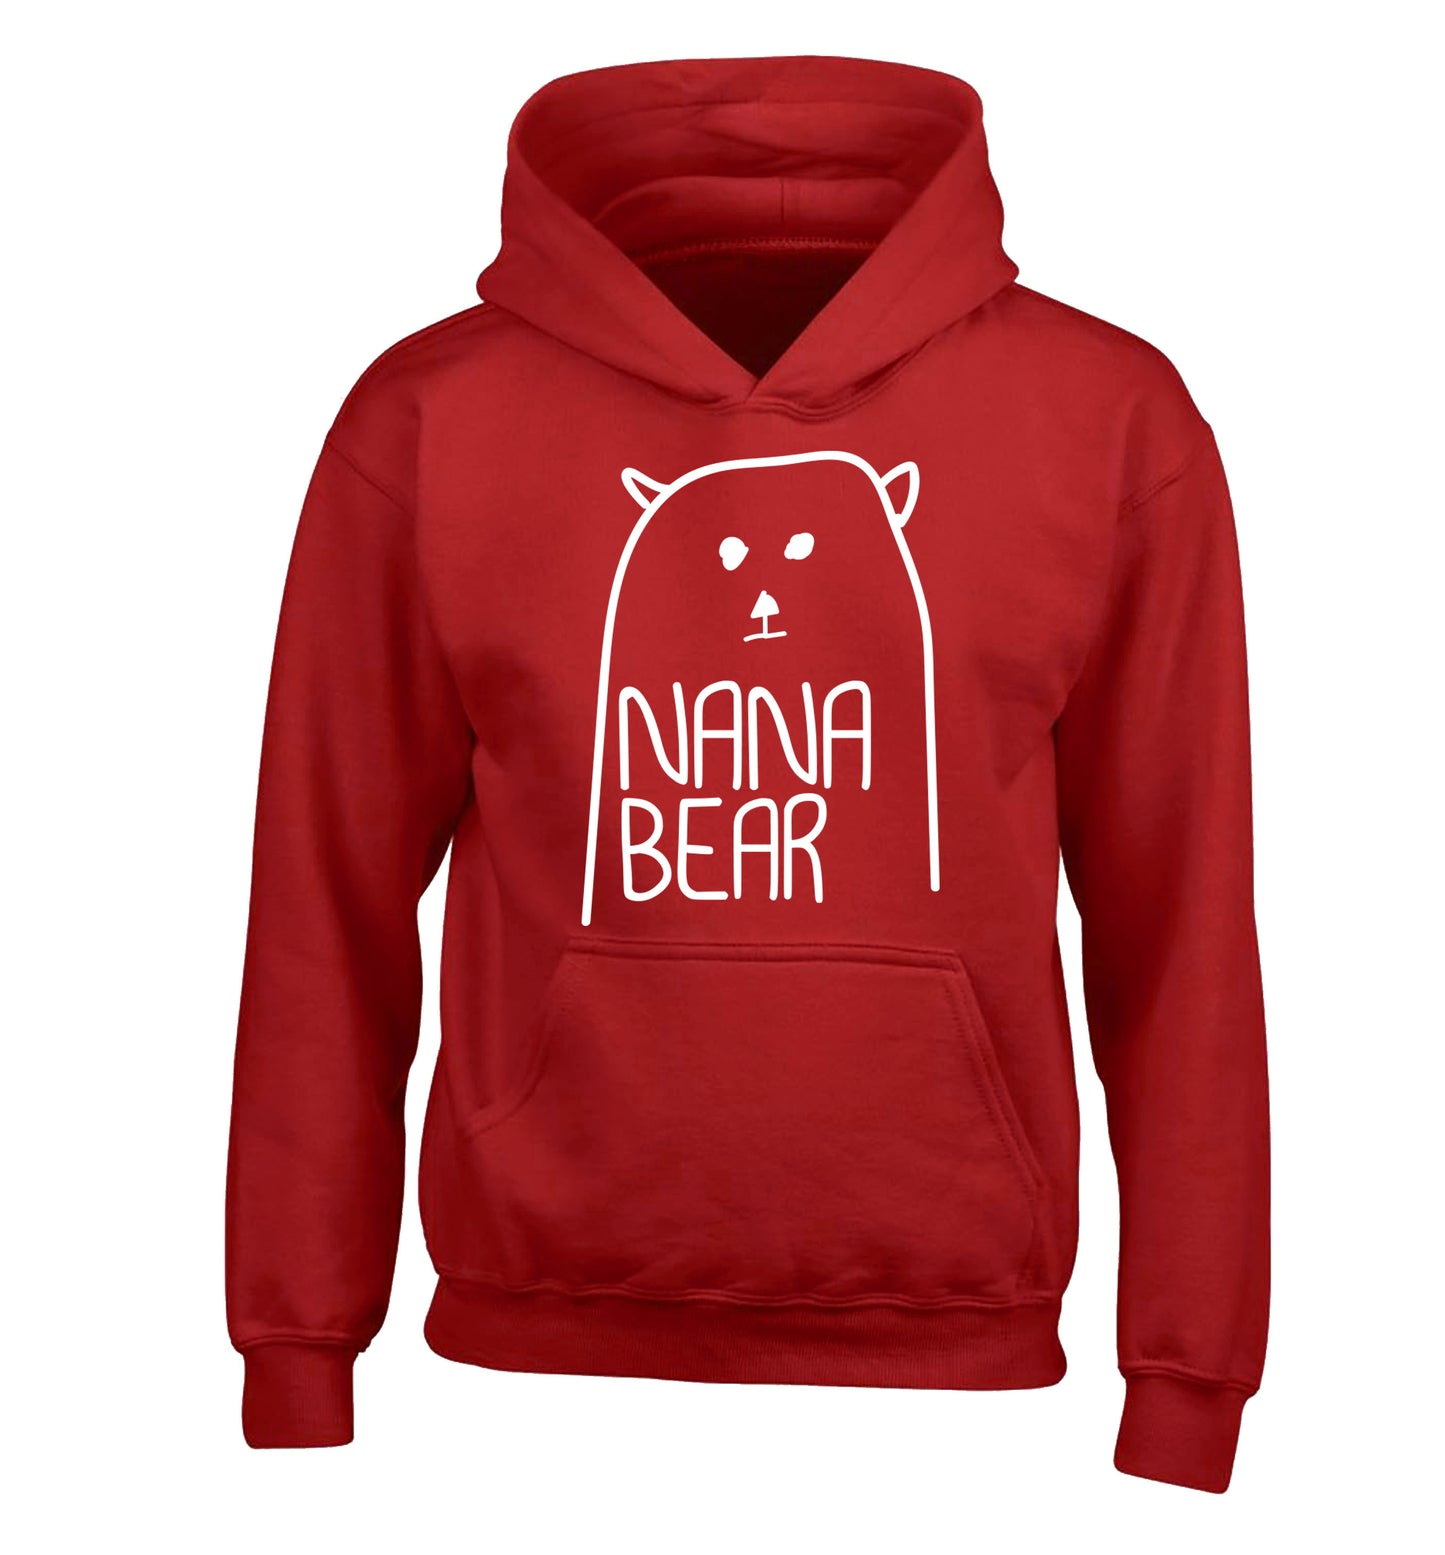 Nana bear children's red hoodie 12-13 Years